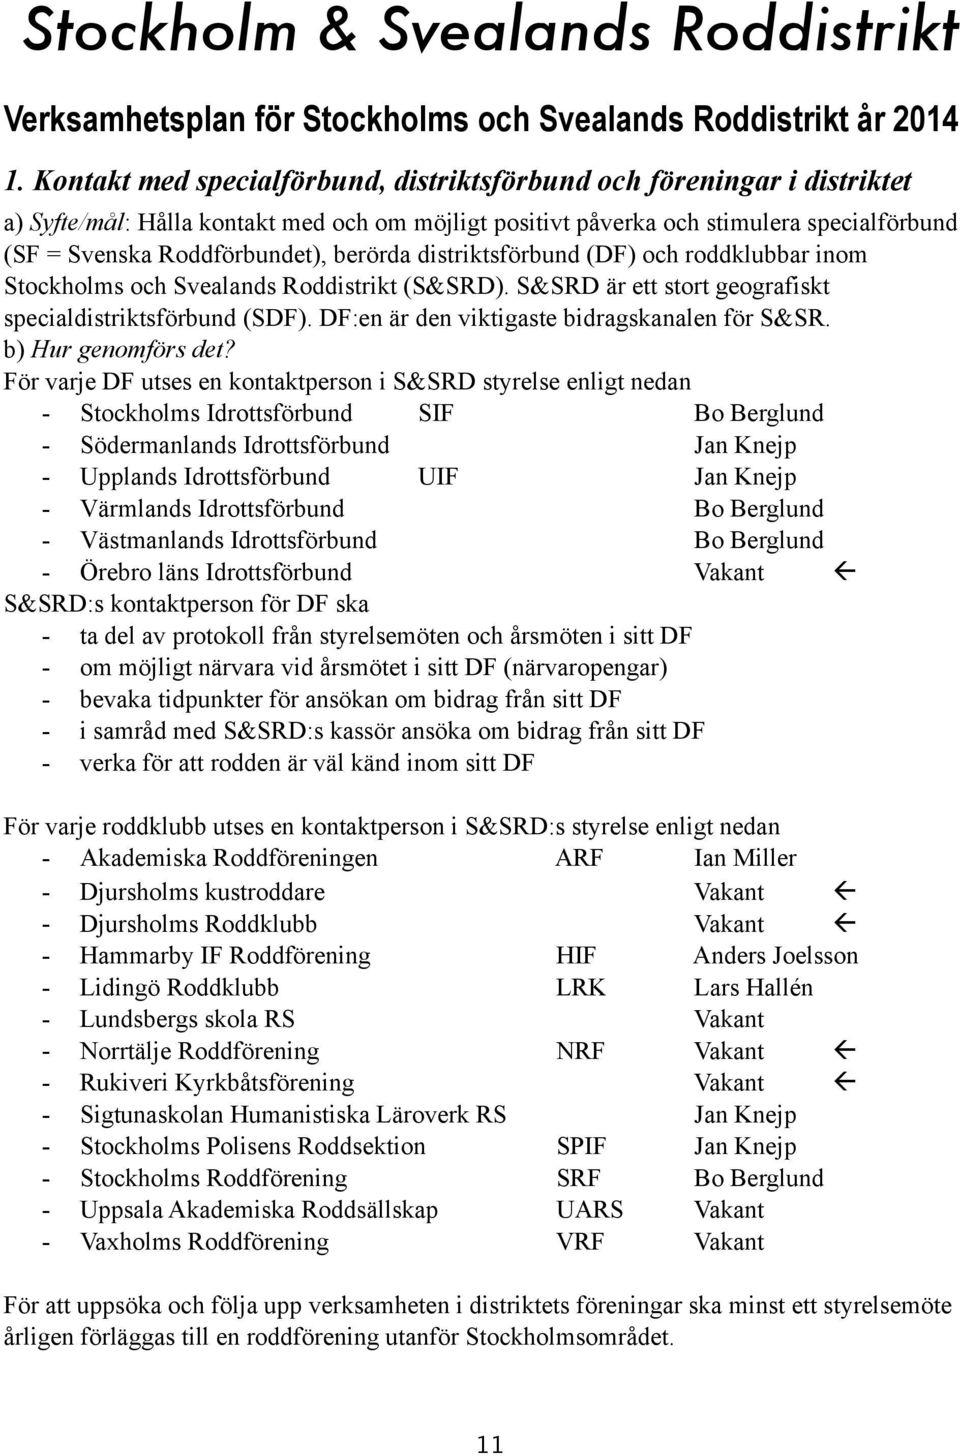 berörda distriktsförbund (DF) och roddklubbar inom Stockholms och Svealands Roddistrikt (S&SRD). S&SRD är ett stort geografiskt specialdistriktsförbund (SDF).